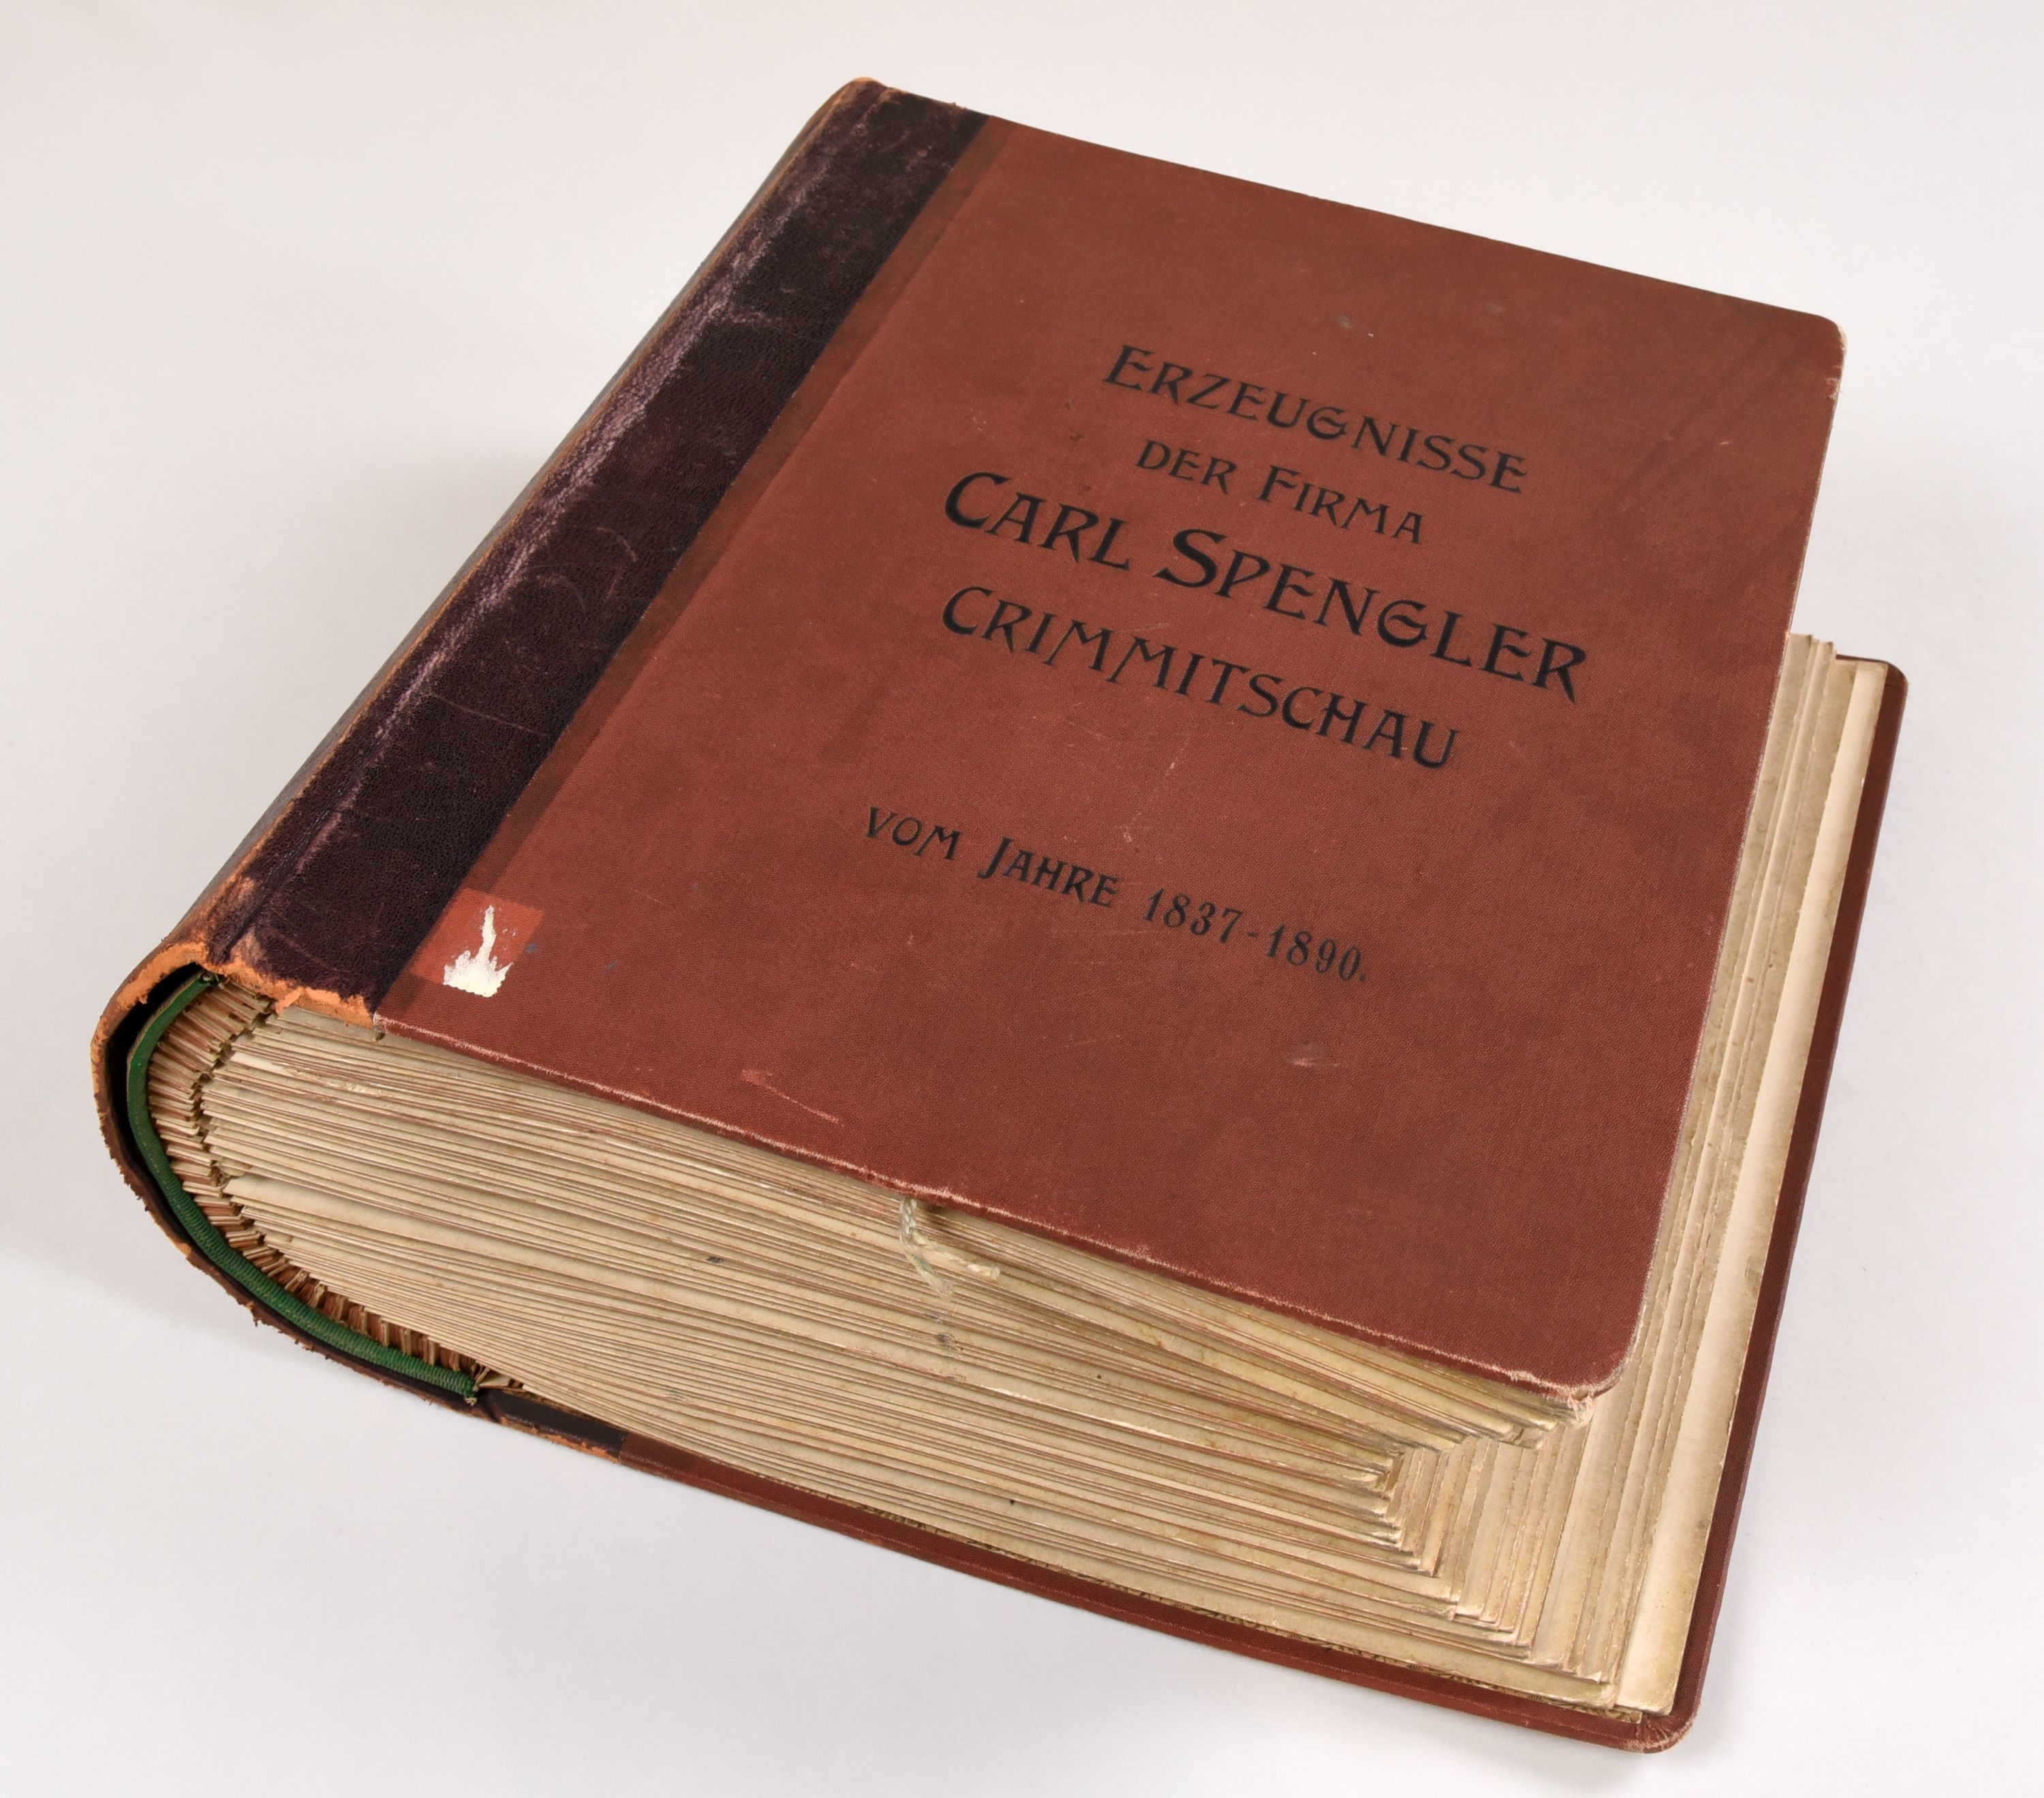 Musterbuch: "Erzeugnisse der Firma Carl Spengler Crimmitschau vom Jahre 1837-1890" (Tuchfabrik Gebr. Pfau RR-R)